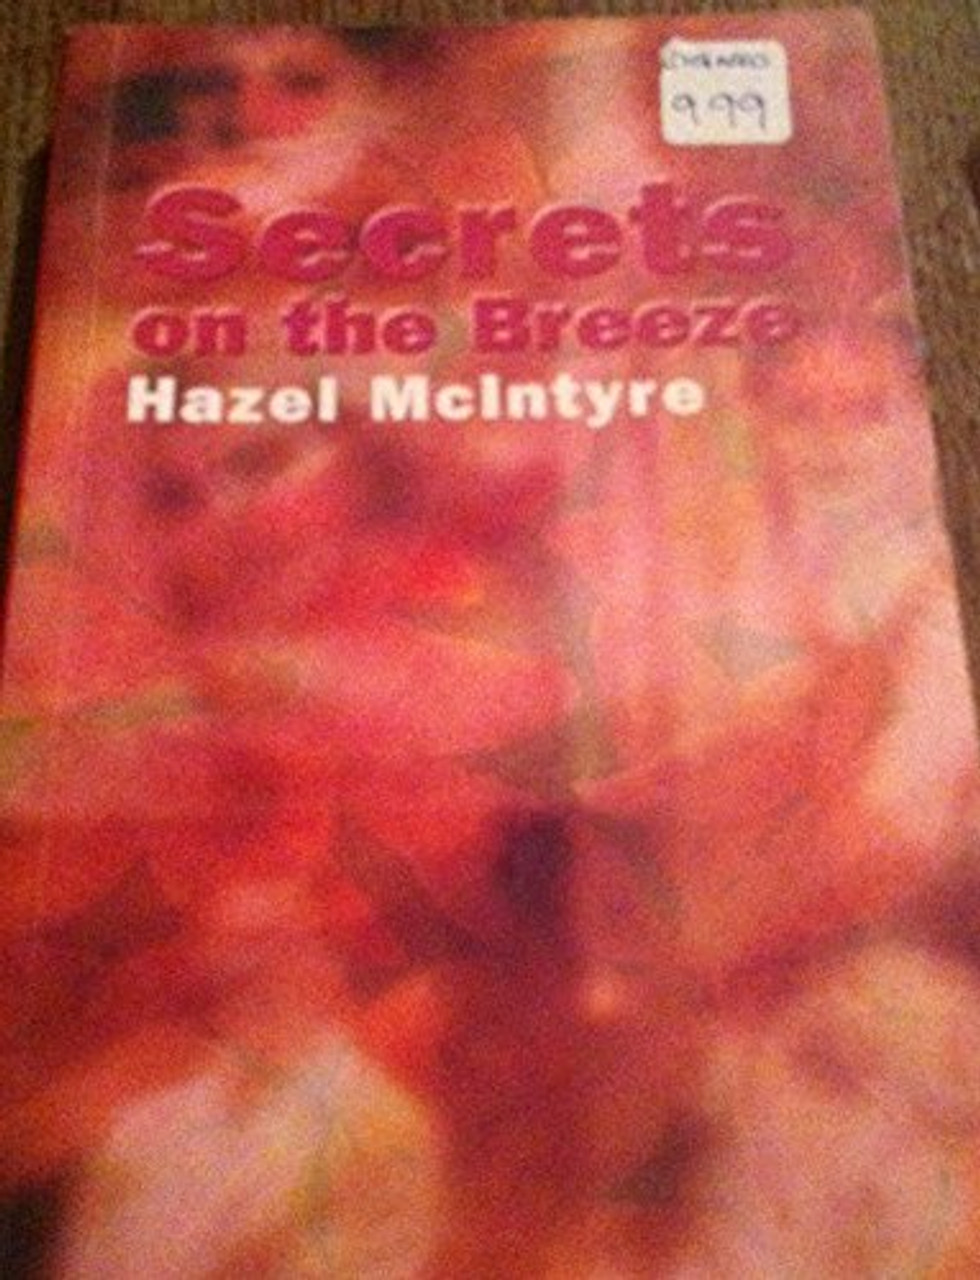 Hazel McIntyre / Secrets on the Breeze